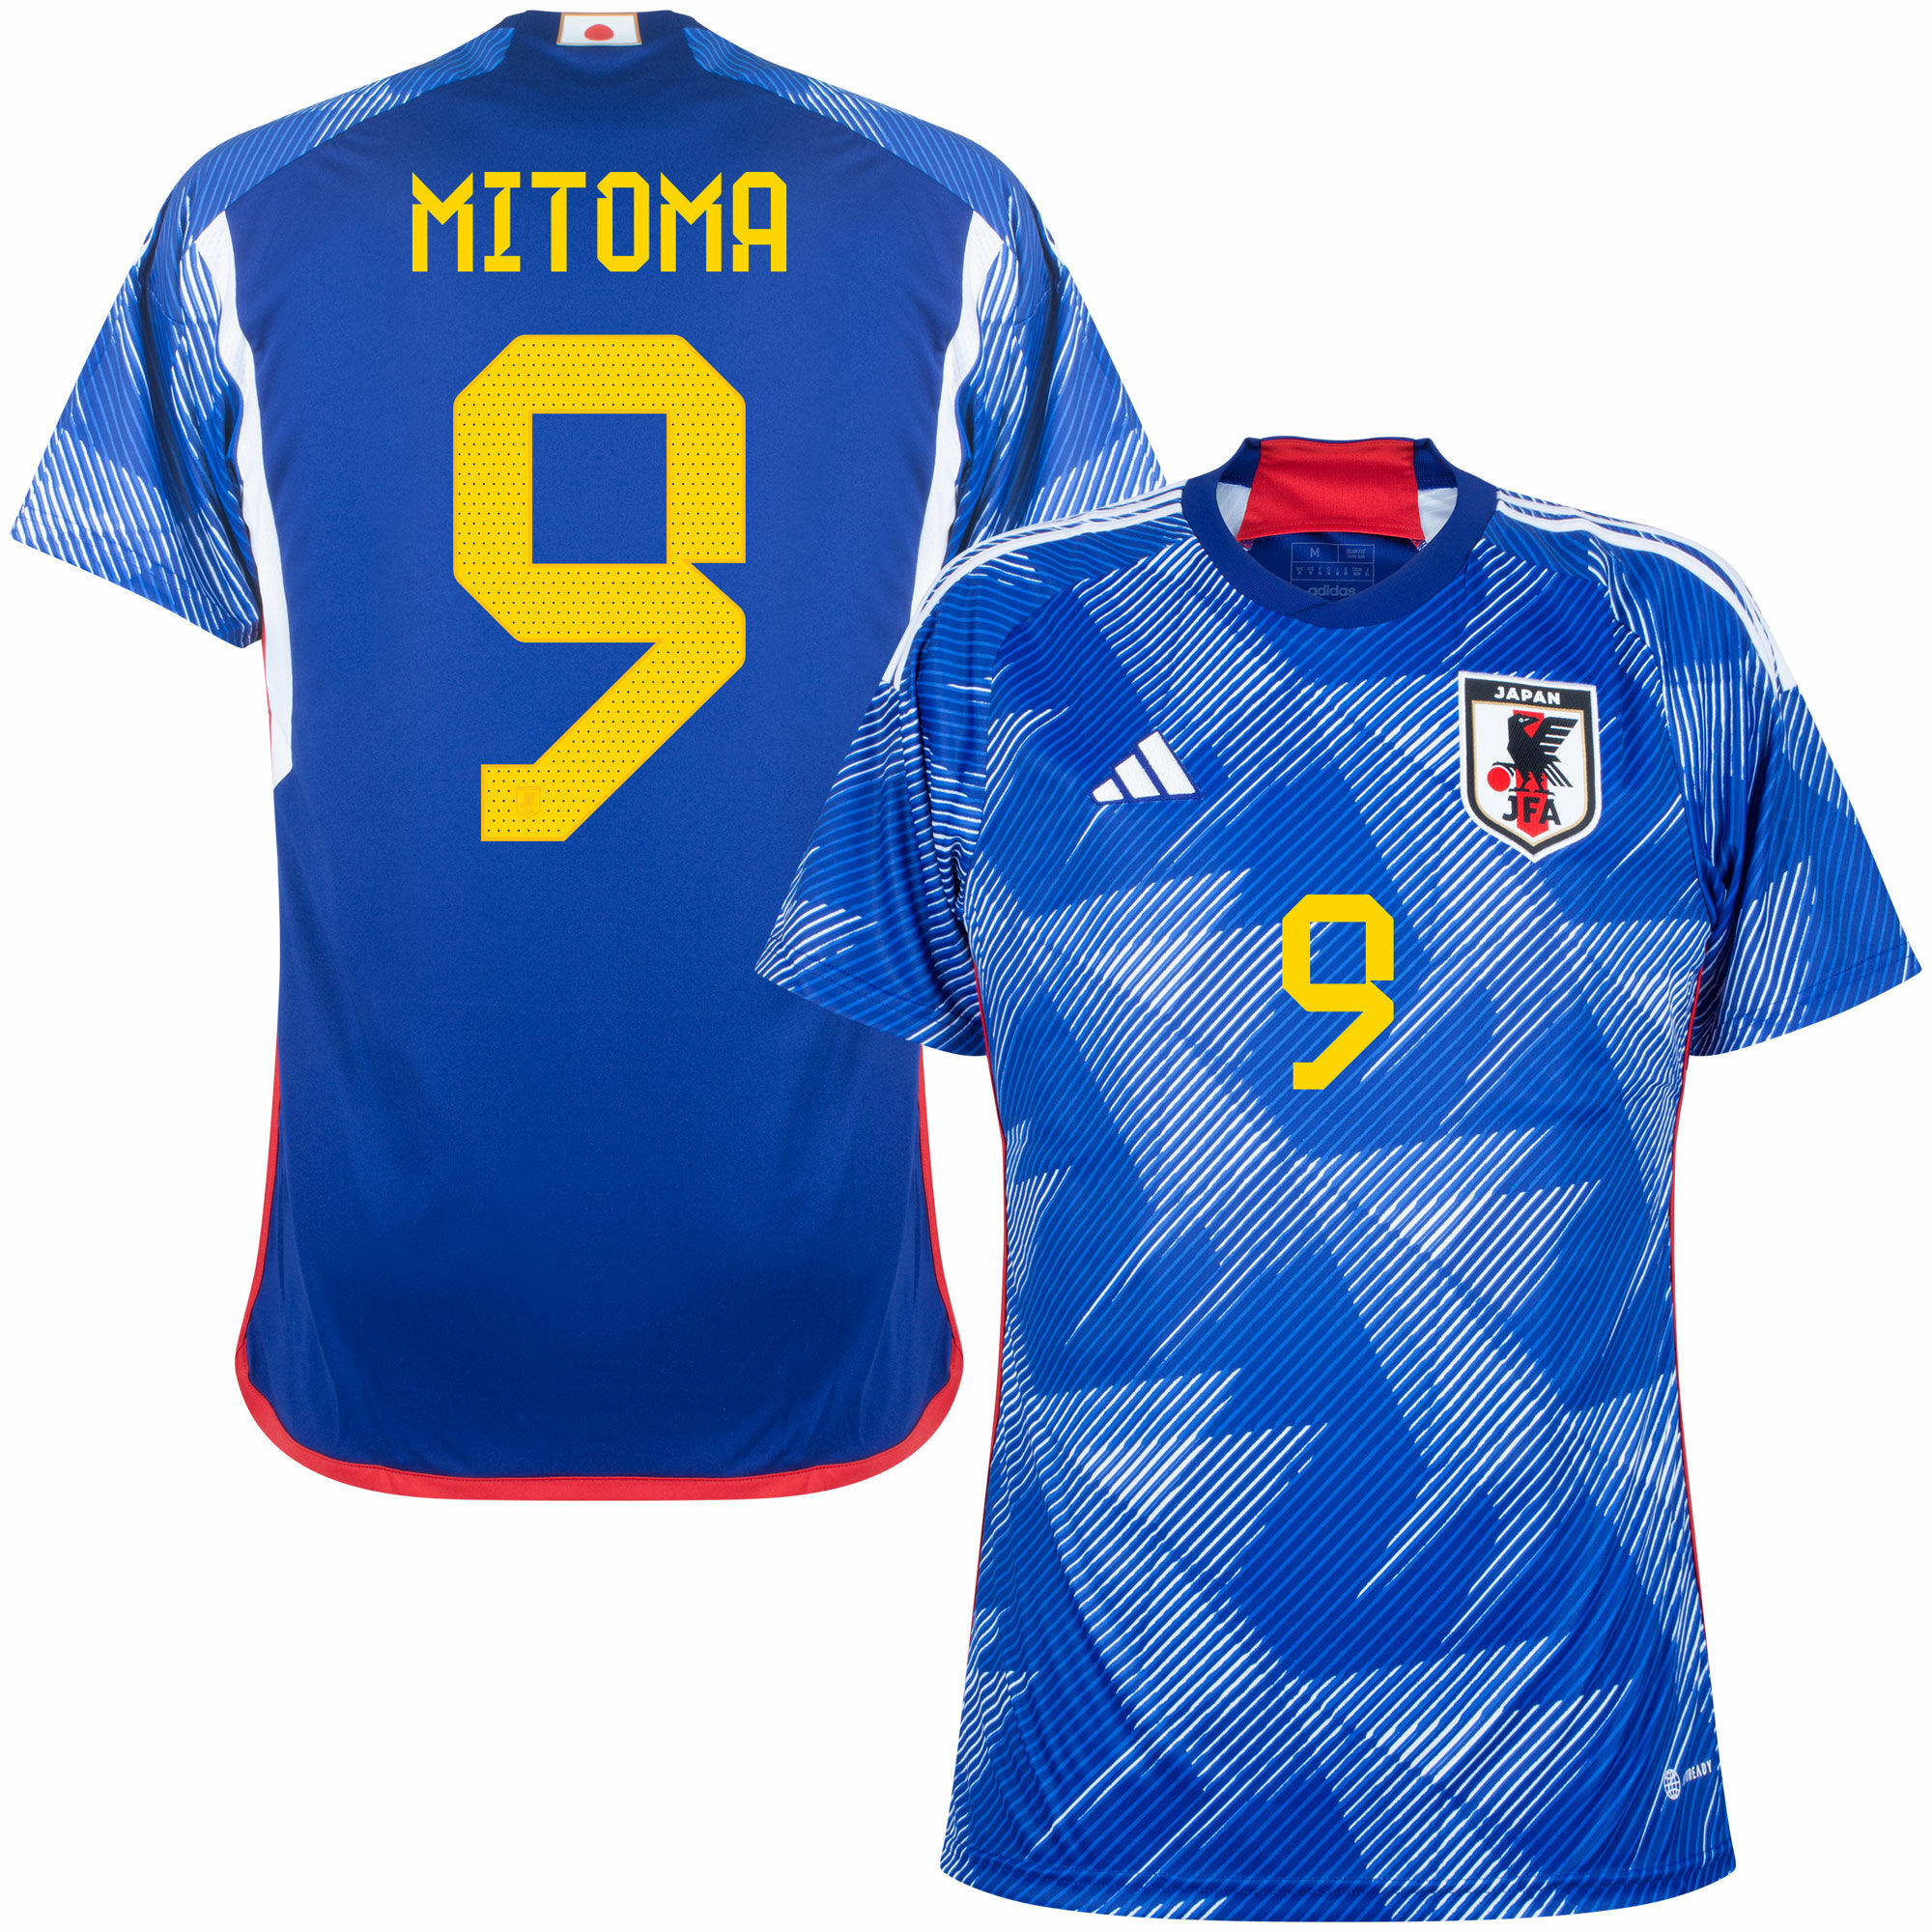 Japonsko - Dres fotbalový - oficiální potisk, Kaoru Mitoma, domácí, sezóna 2022/23, modrý, číslo 9